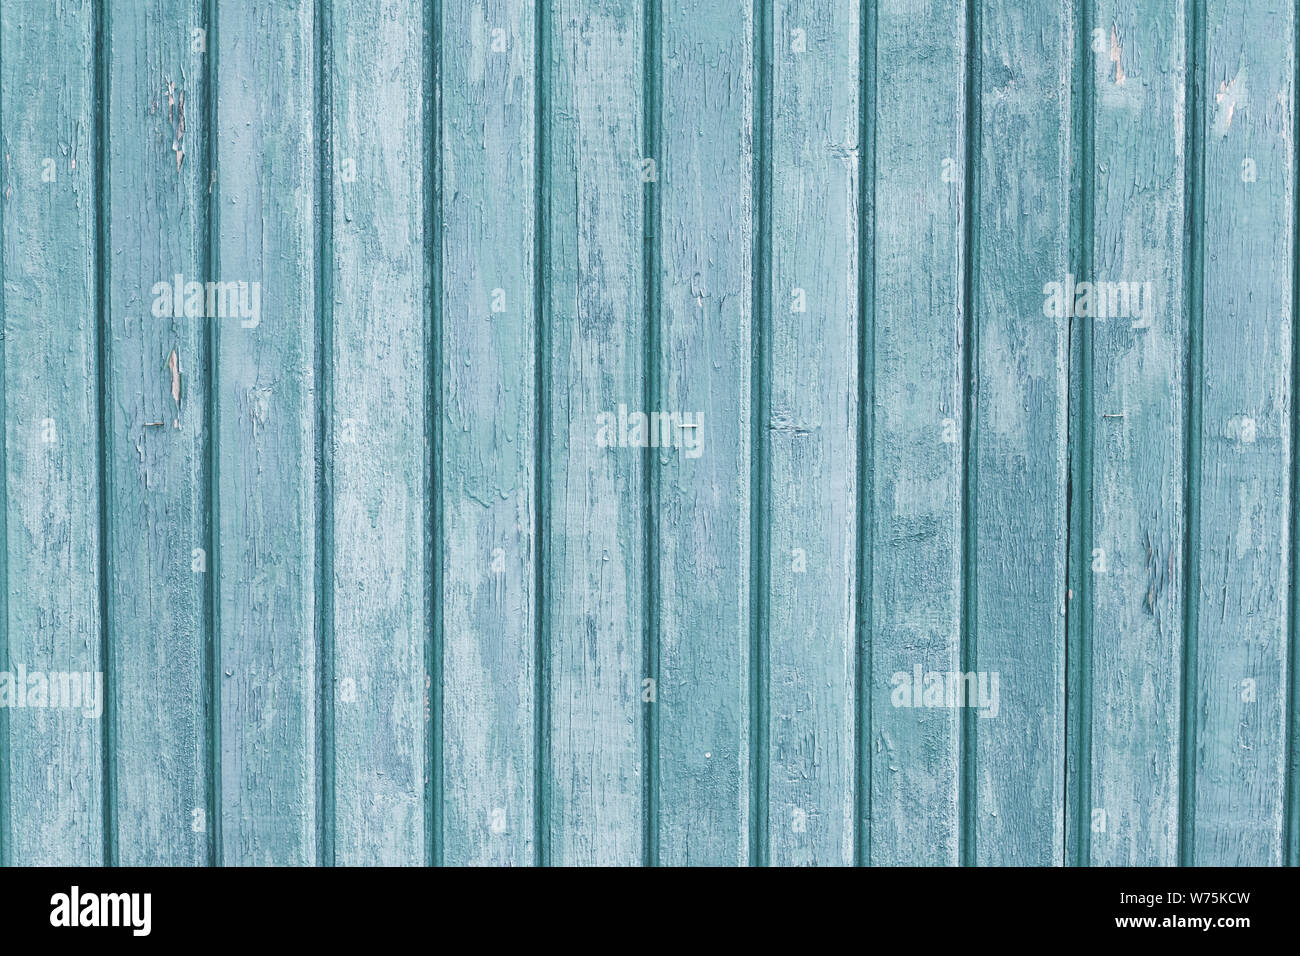 Strette tavole di legno. Grigio e blu chiaro legno pannelli verticali. Weathered colorata antica recinzione. Trama ruvida. Striping sfondi di legno. Natural Foto Stock